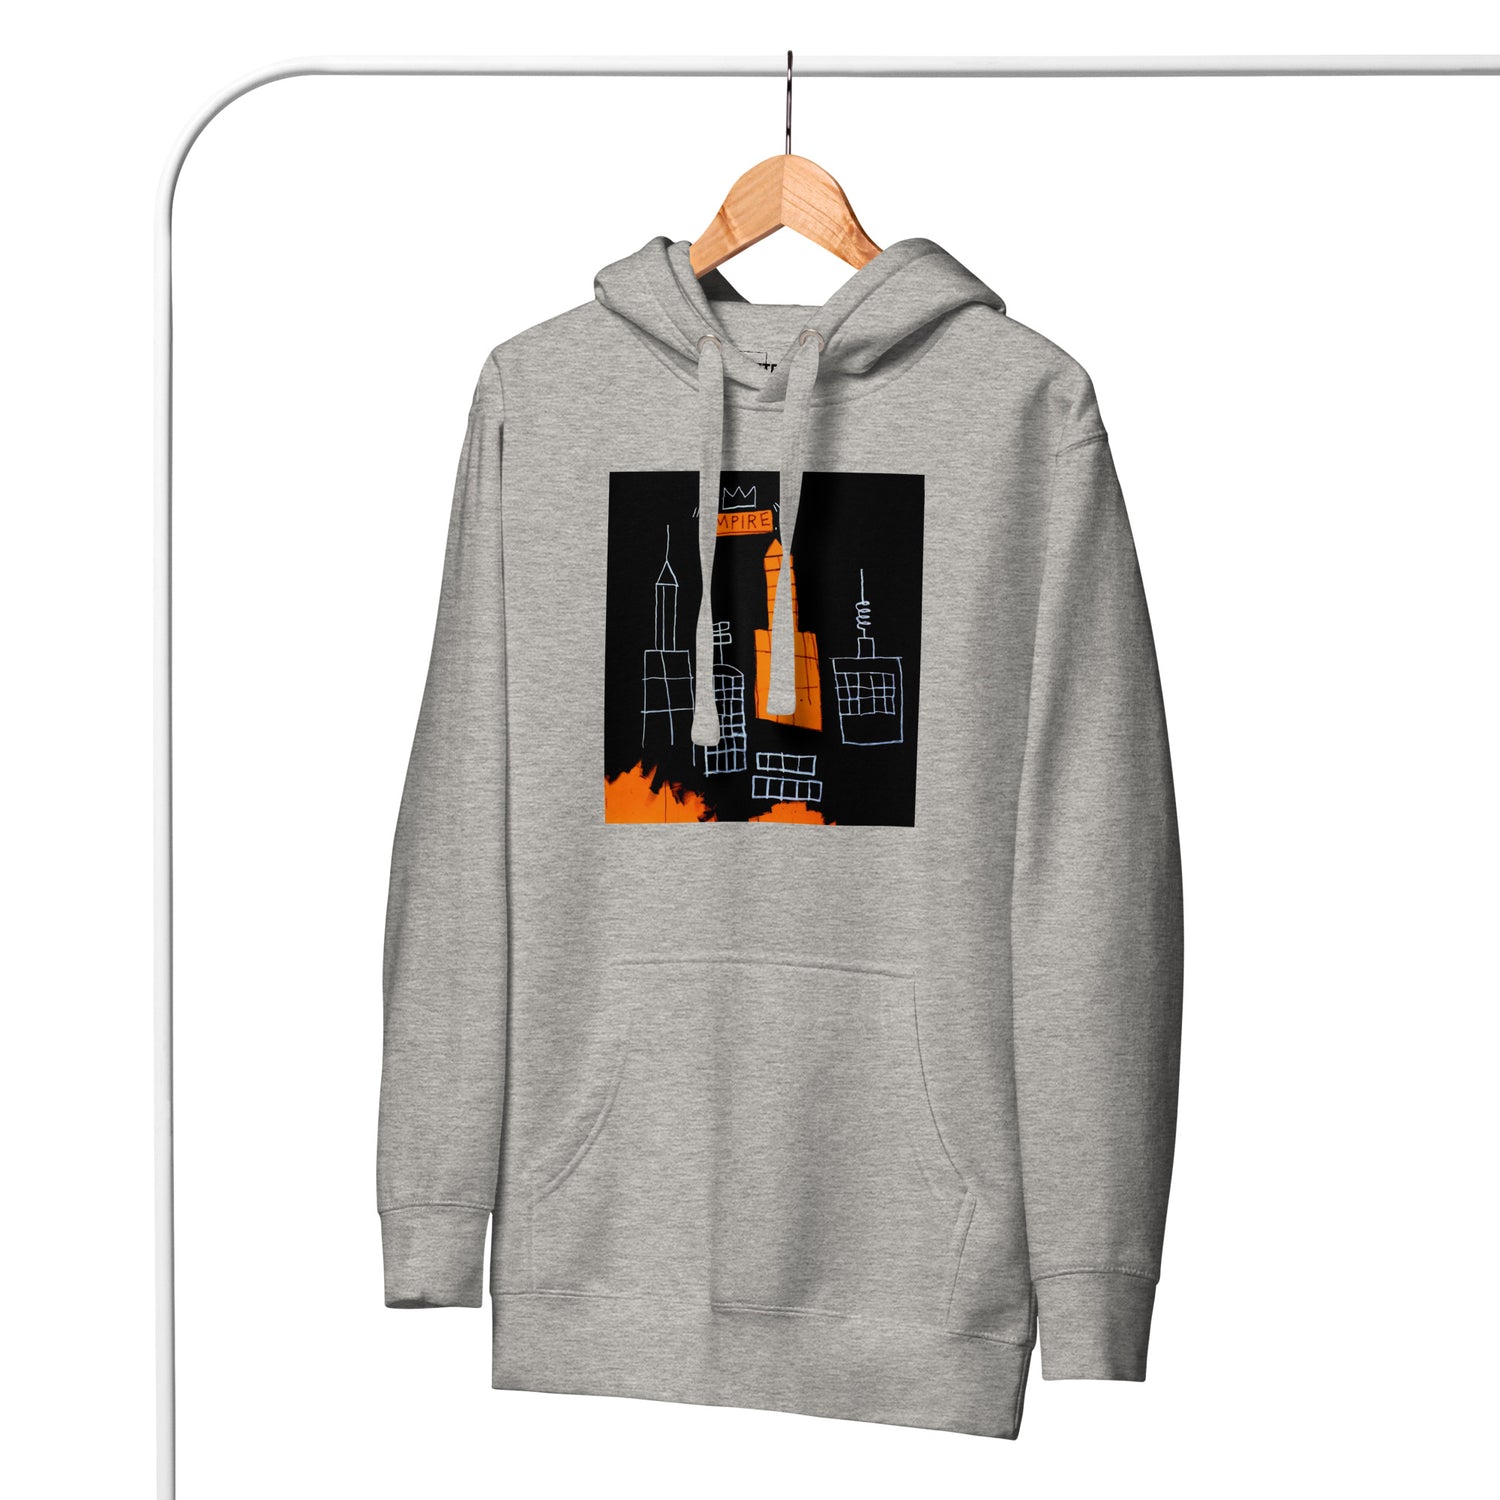 Jean-Michel Basquiat "Mecca" Artwork Printed Premium Streetwear Sweatshirt Hoodie Grey